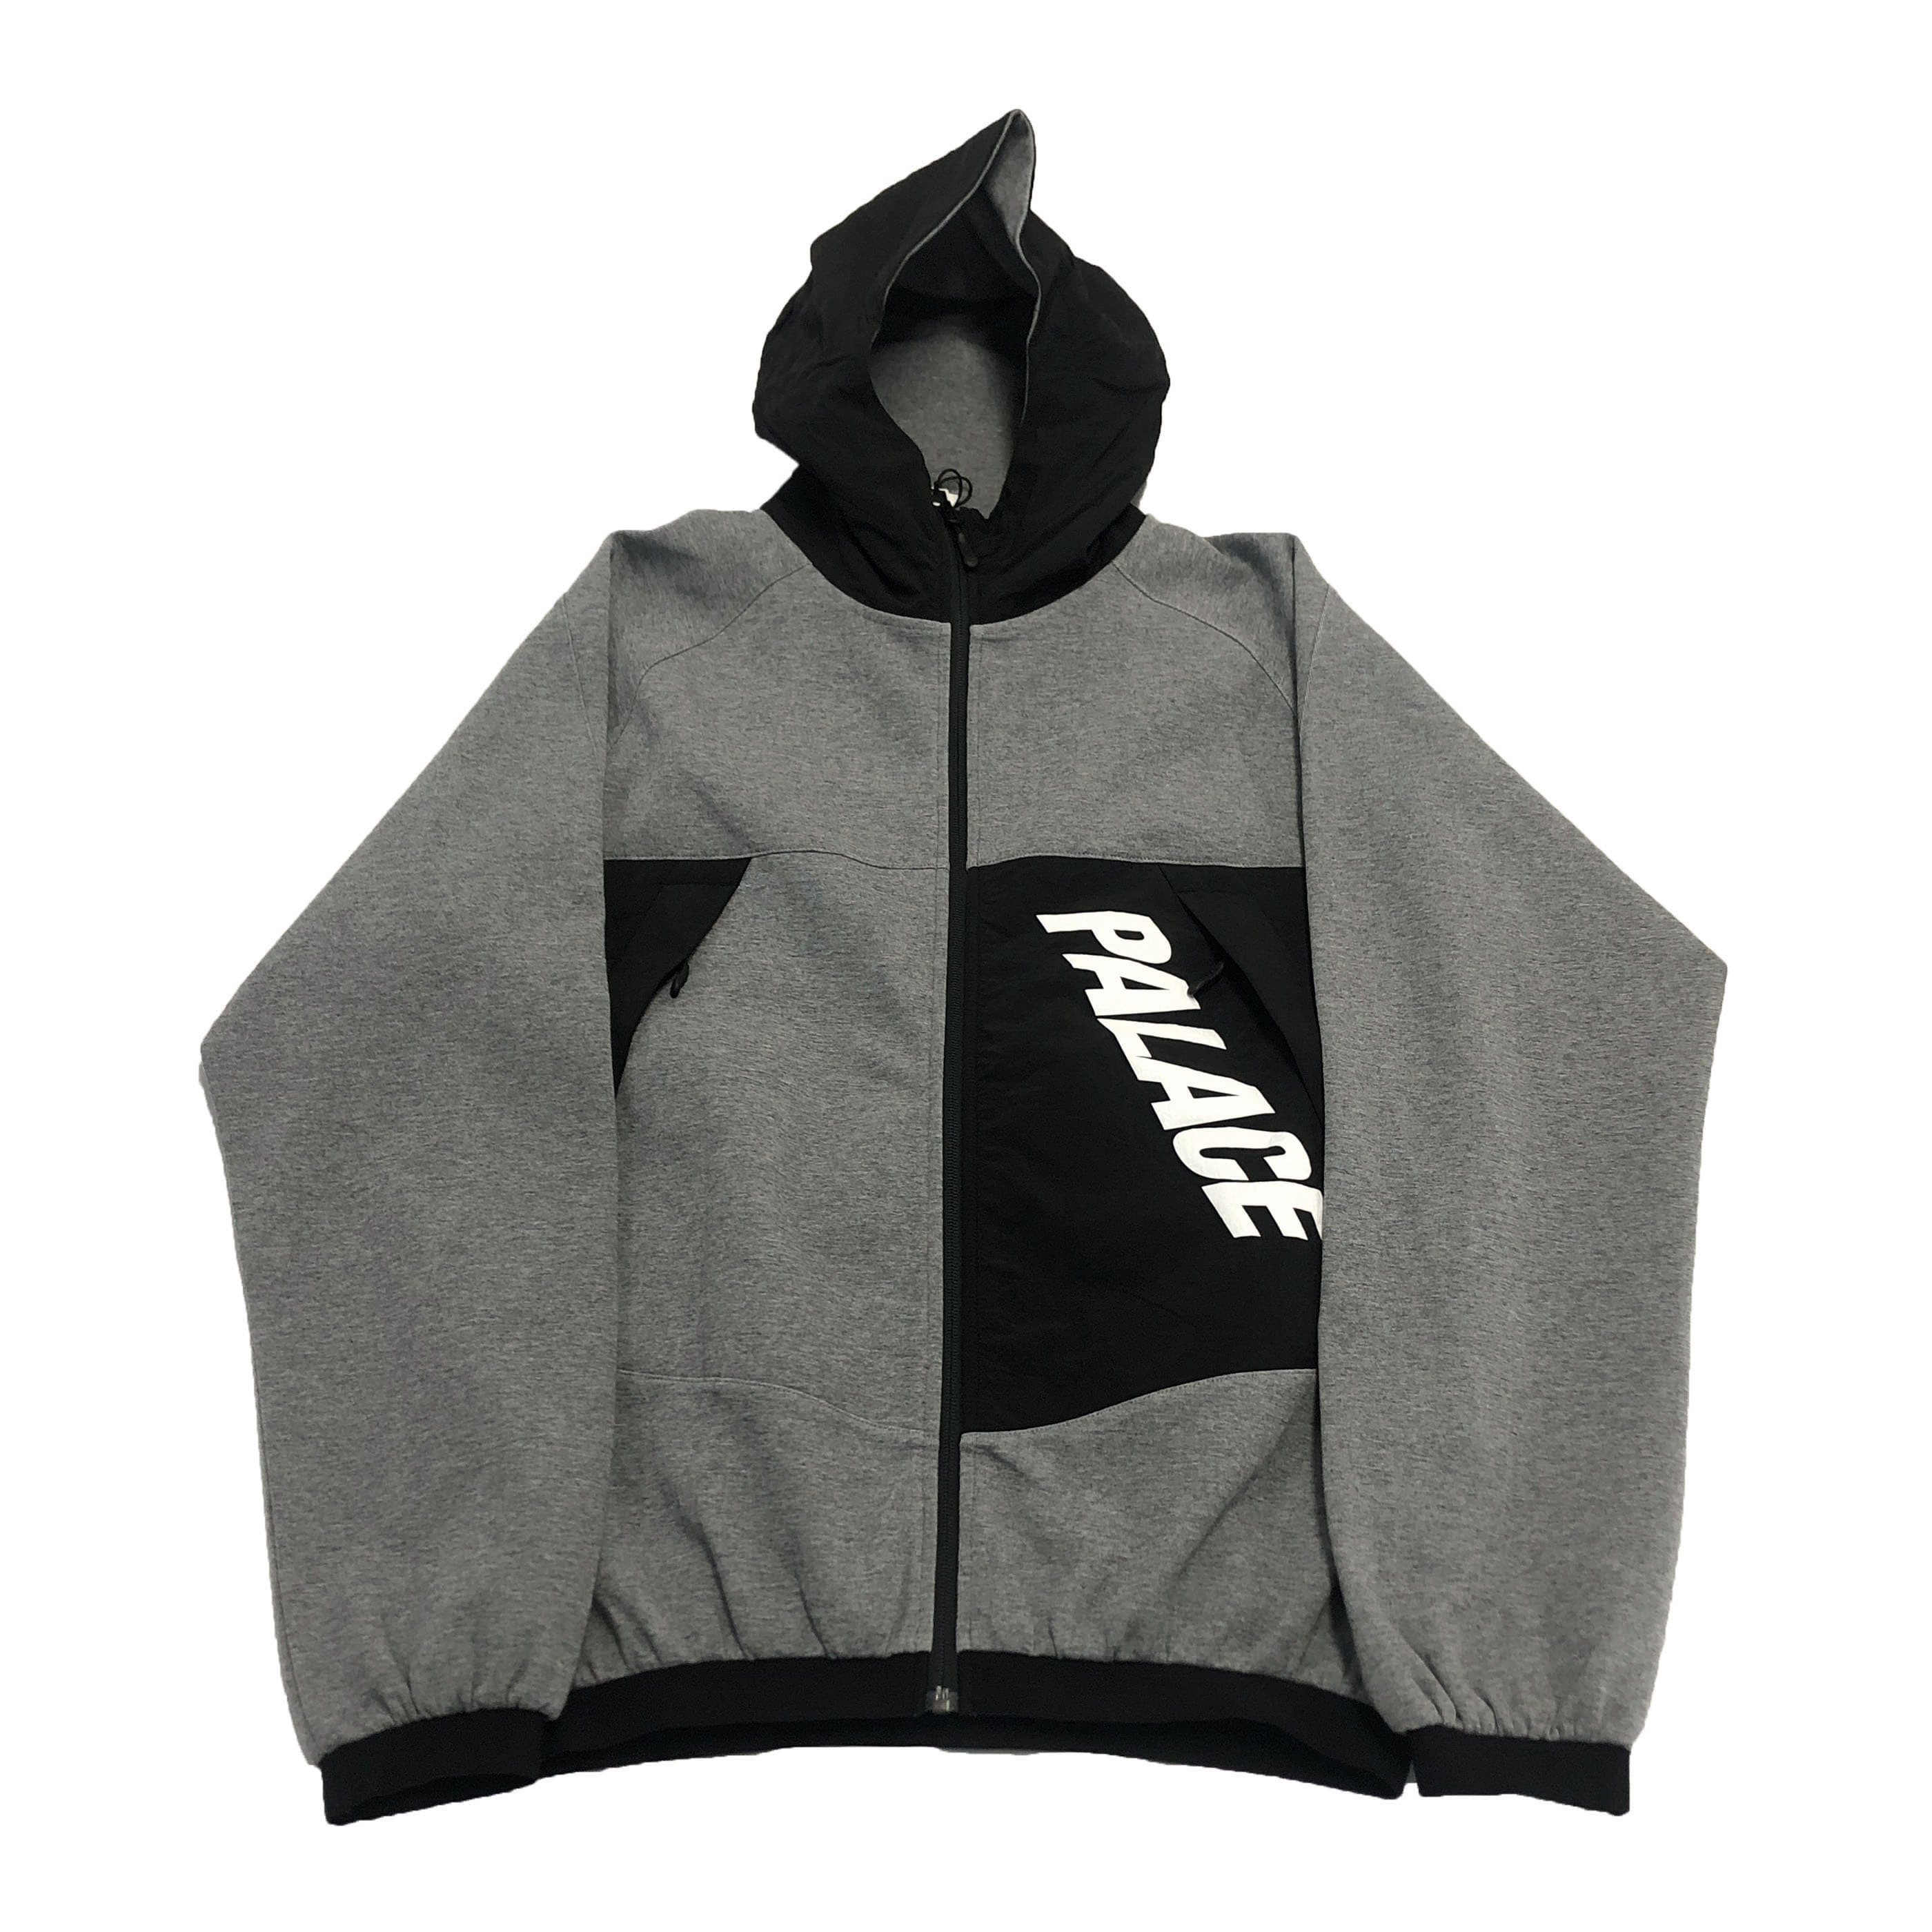 [Palace] Grey Black P-Tech Track Jacket  - Size L